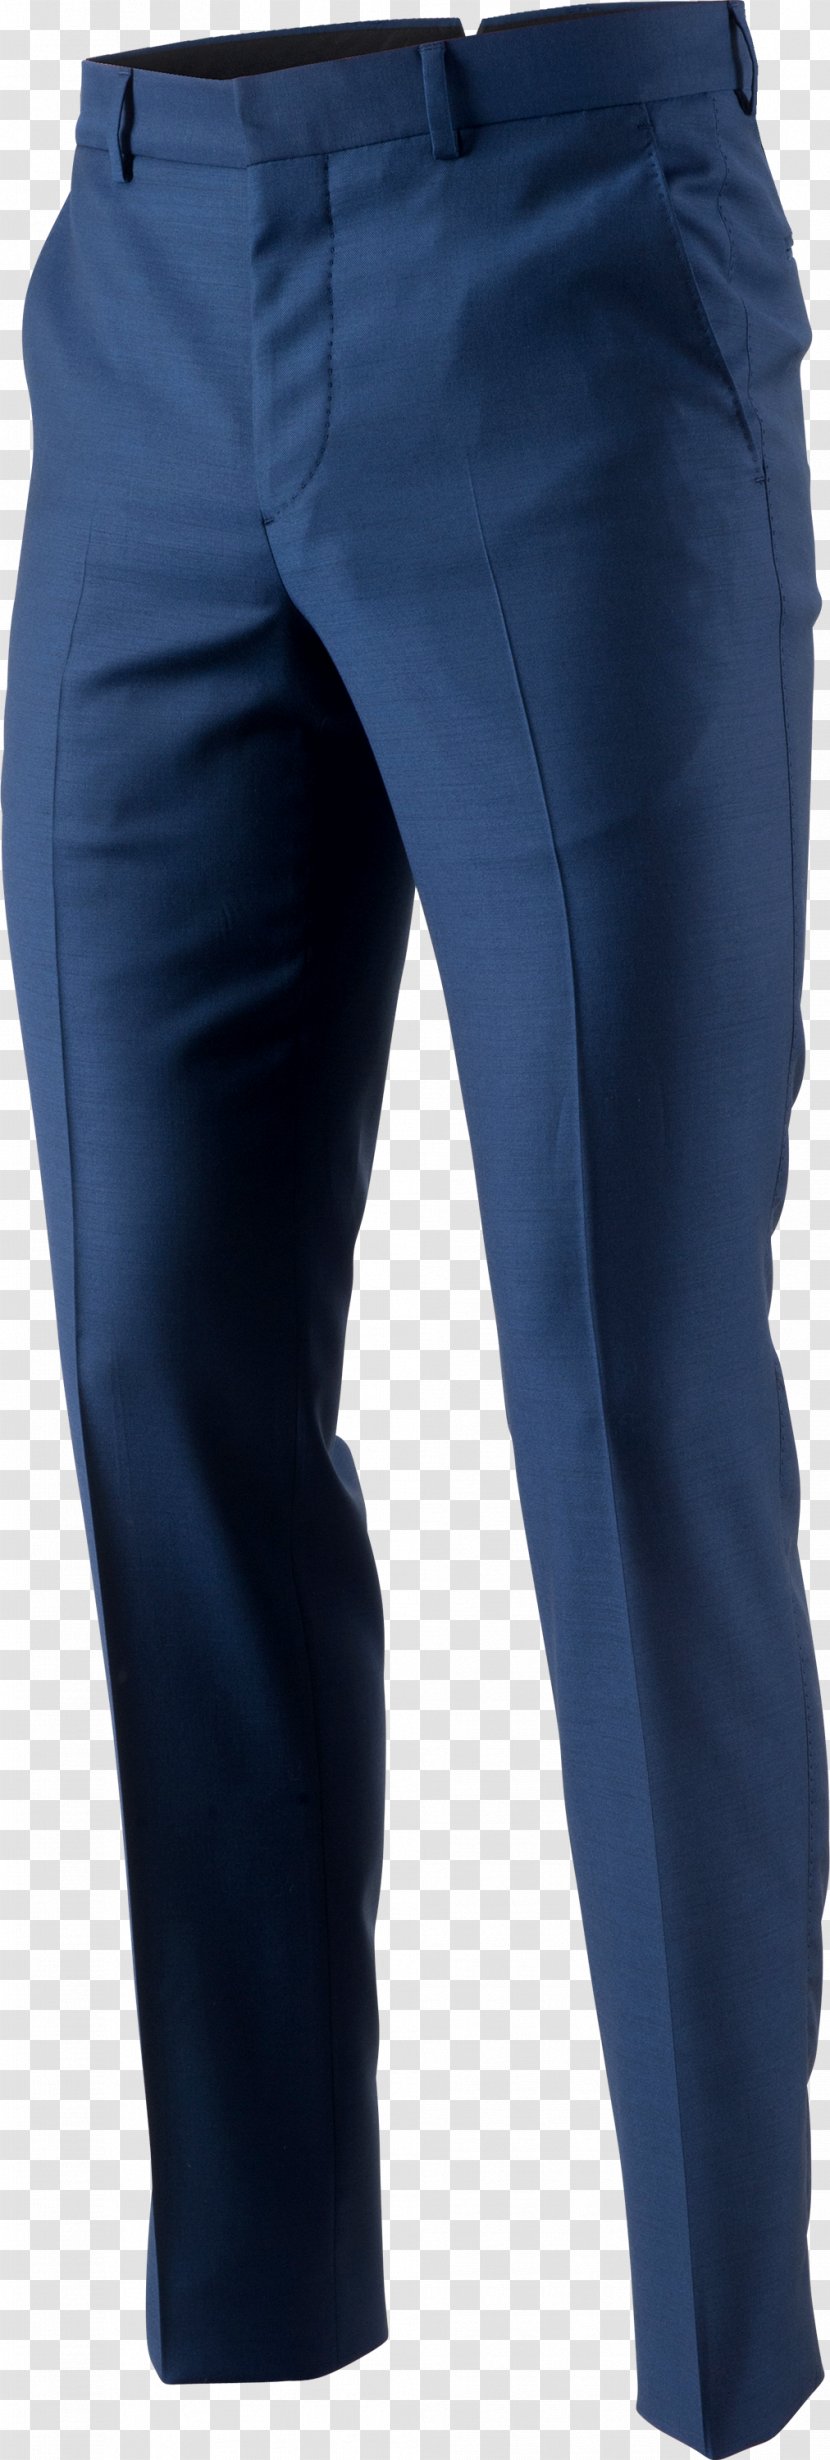 Jeans Armani Slim-fit Pants Clothing Transparent PNG